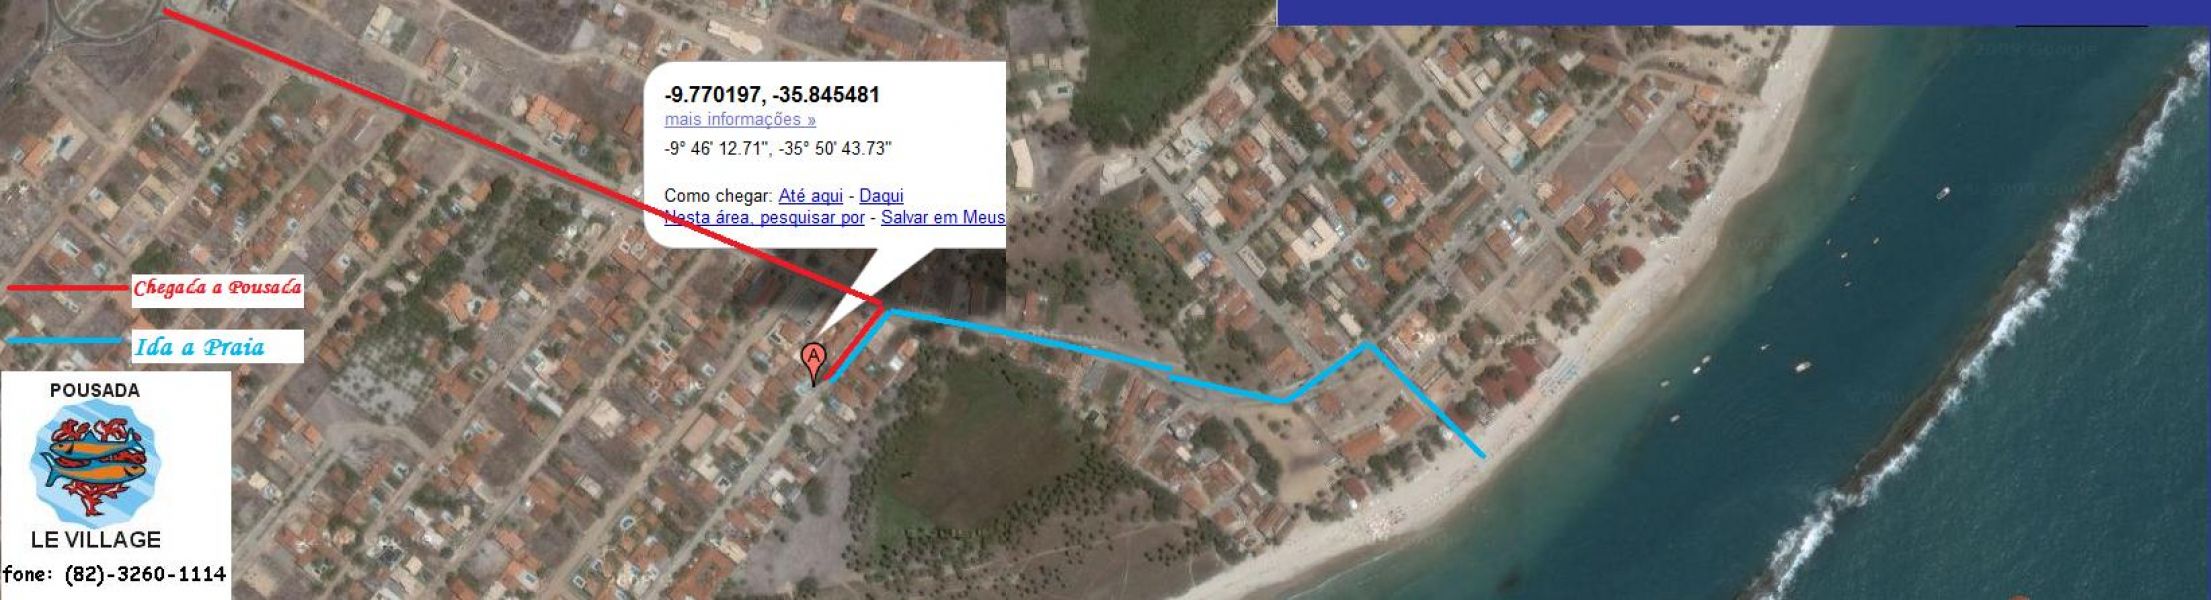 Apartamentos - Praia do Frances - LIt Sul Maceio - Alagoas (BR)